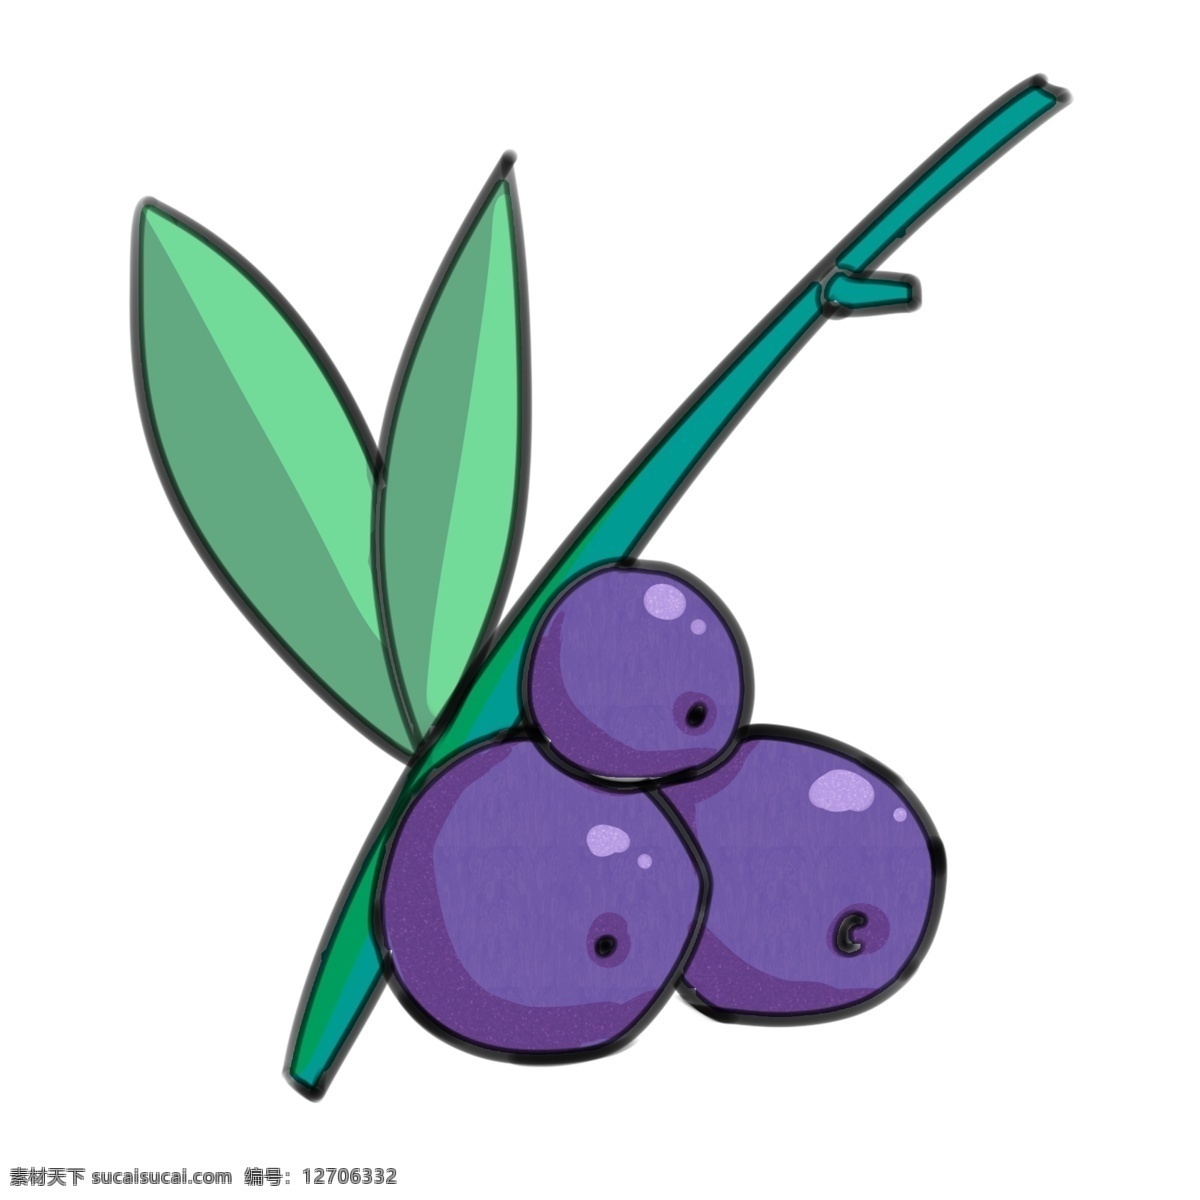 枝头 上 三 只 蓝莓 很 新鲜 枝头上 三只 开心 扁平风格 大水果 香甜 酸酸的 装饰 贴画 紫色